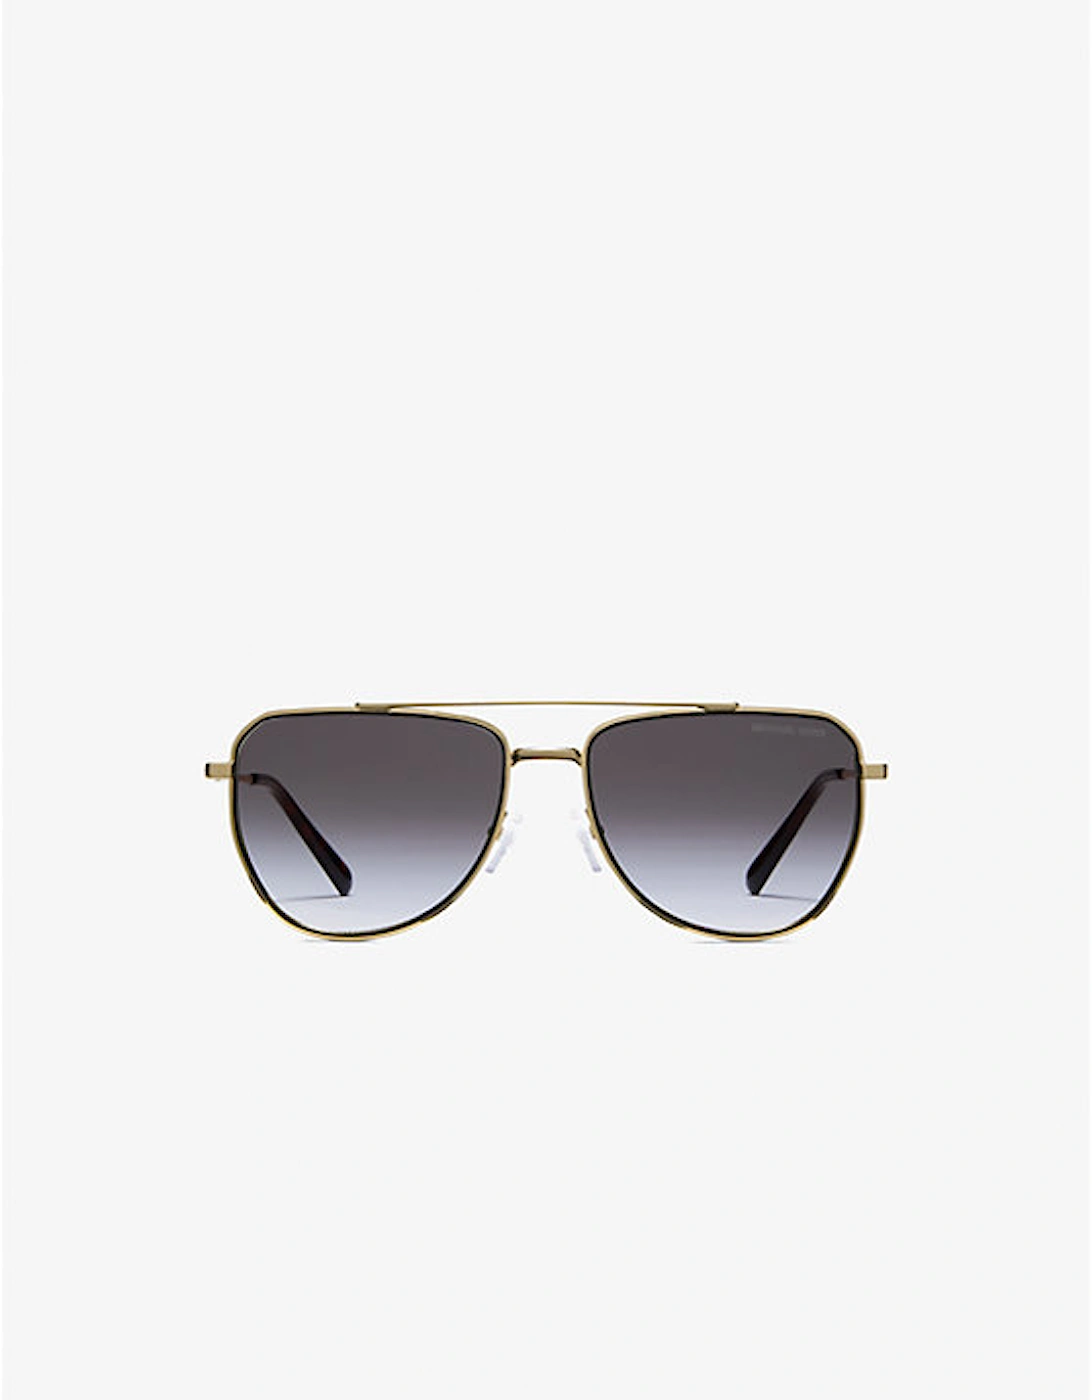 Whistler Sunglasses, 2 of 1